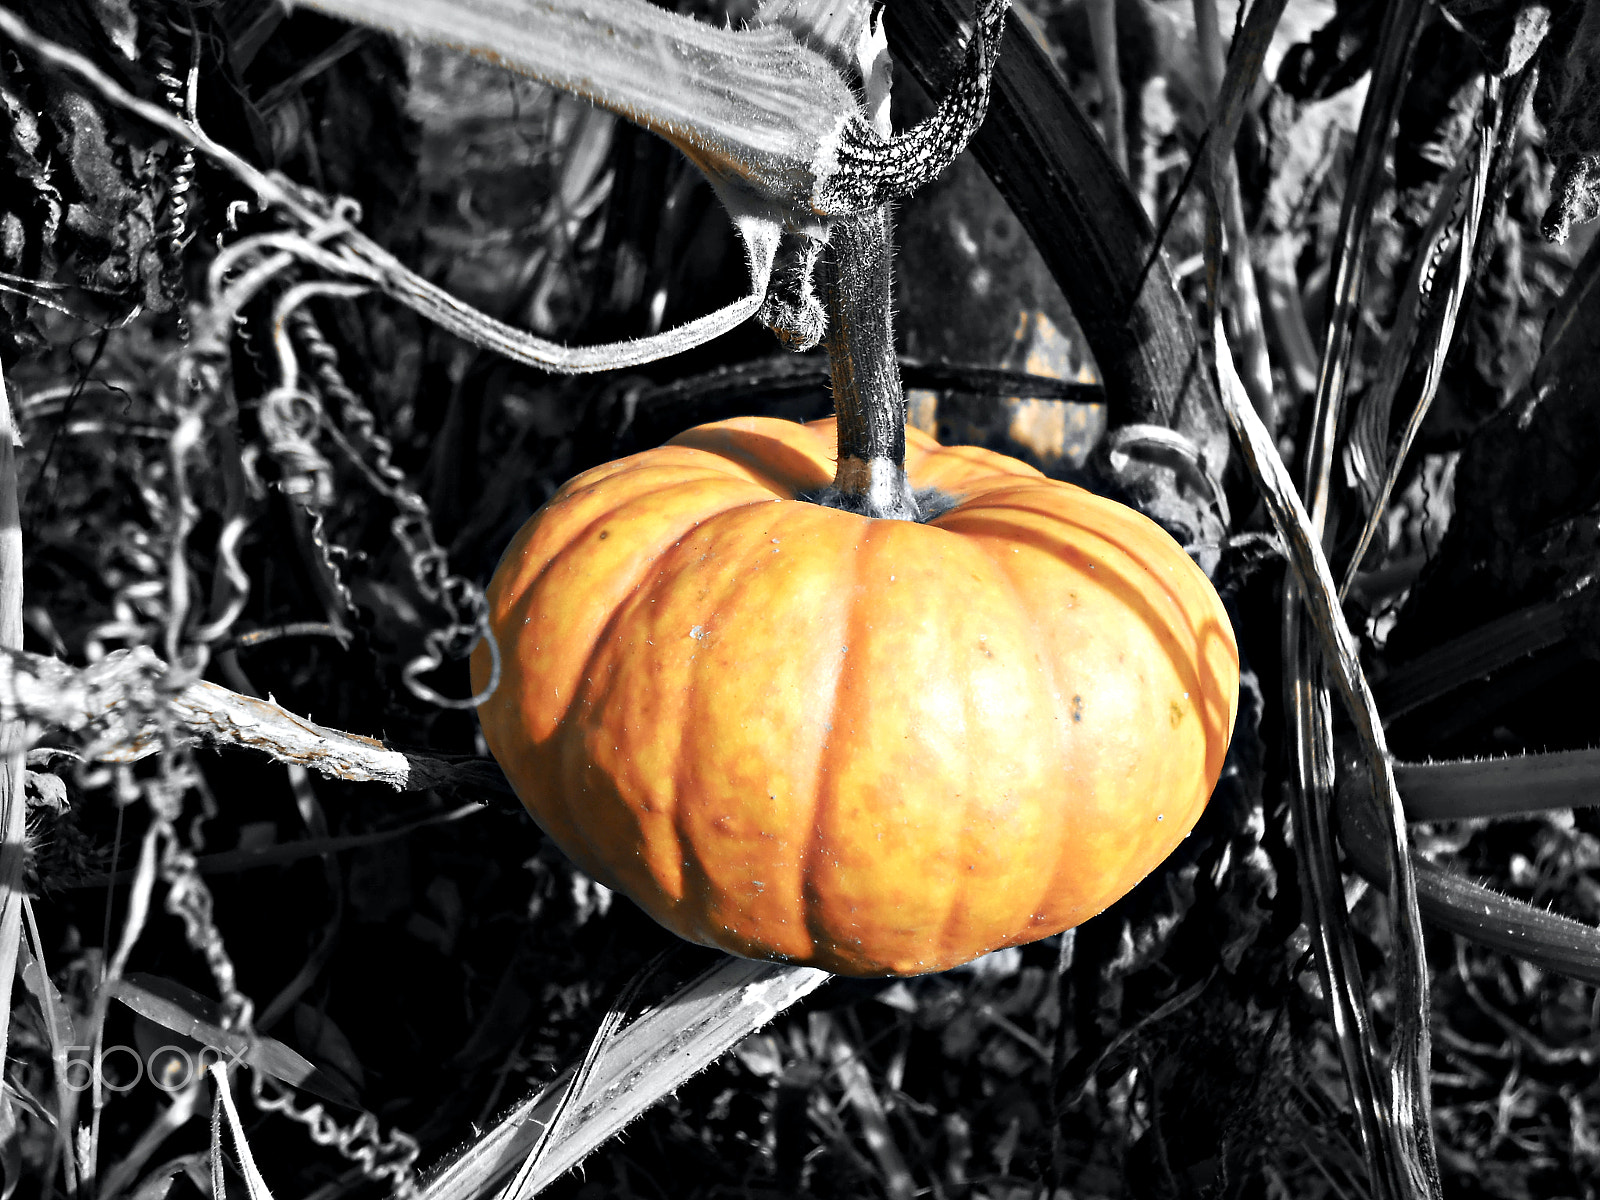 Nikon COOLPIX S2700 sample photo. Pumpkin photography